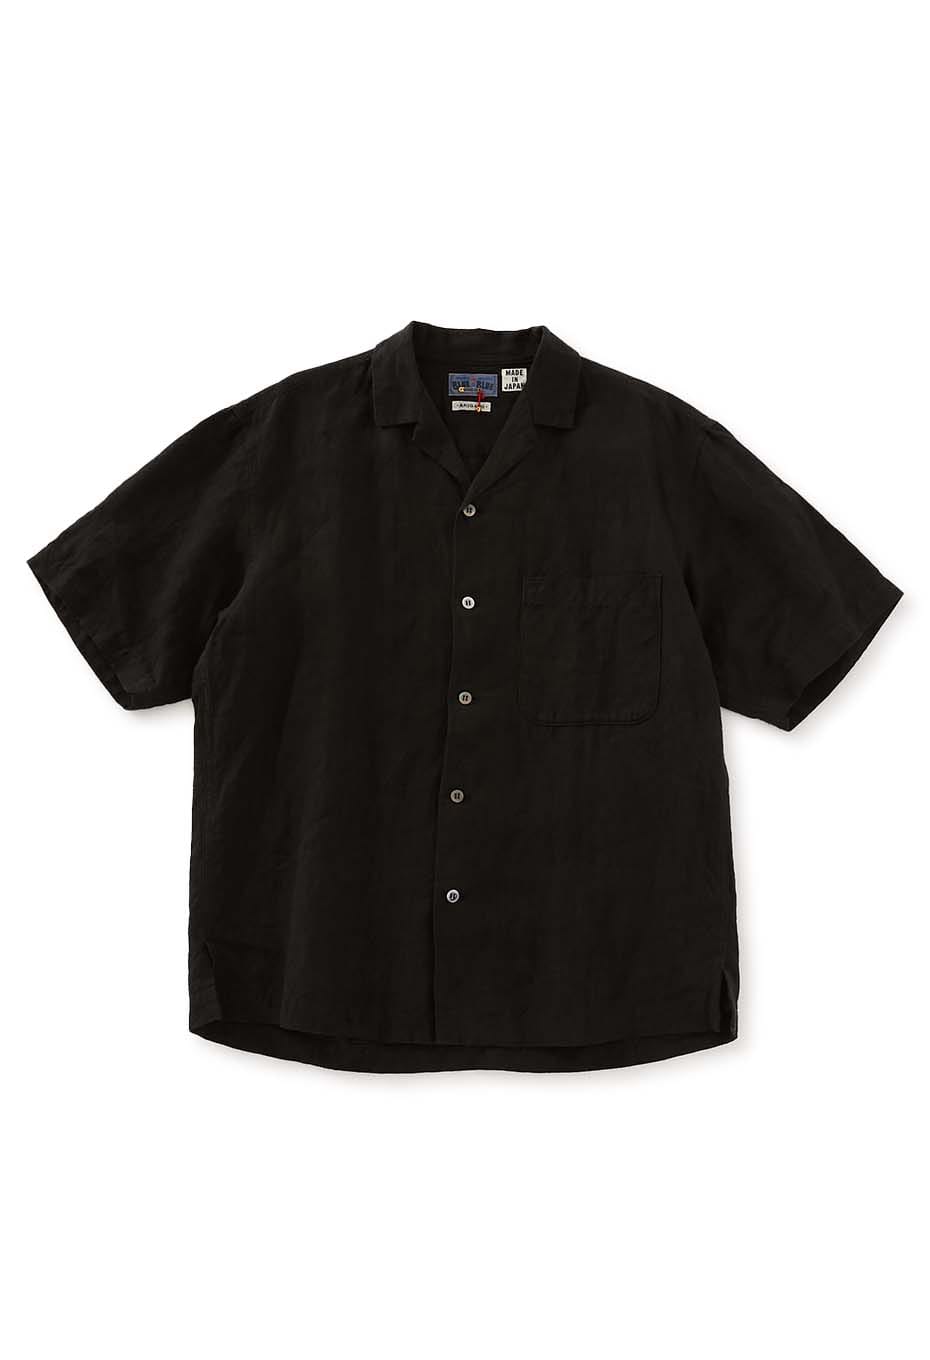 Black linen aloha shirt